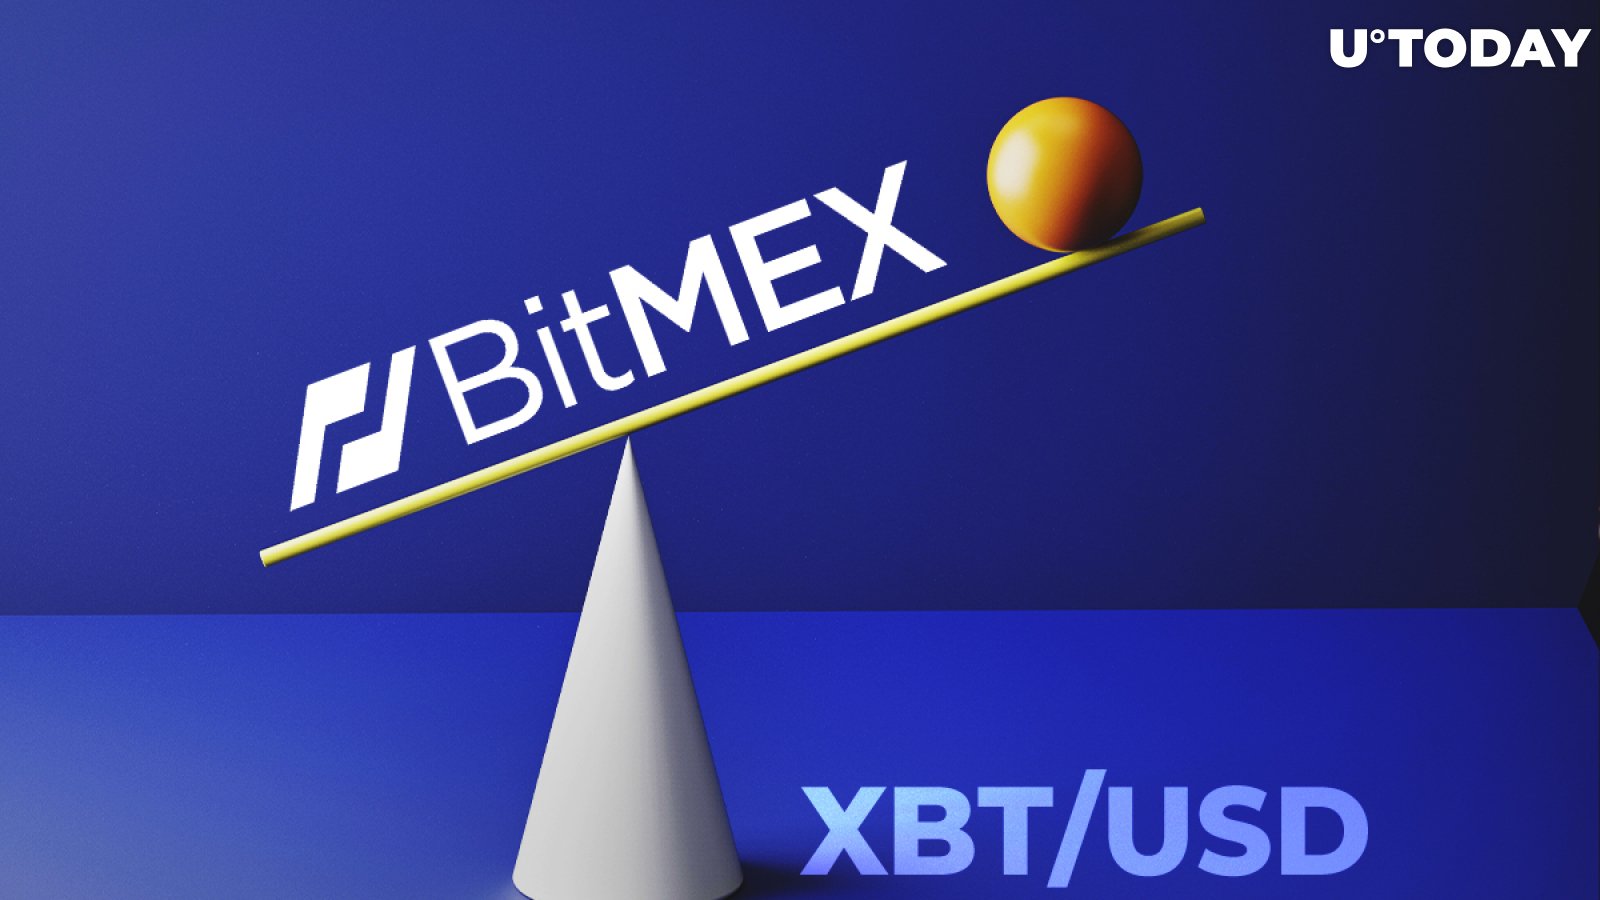 XBT/USD Open Interest on BitMEX Is Stabilizing After 20% Drop: Skew Data